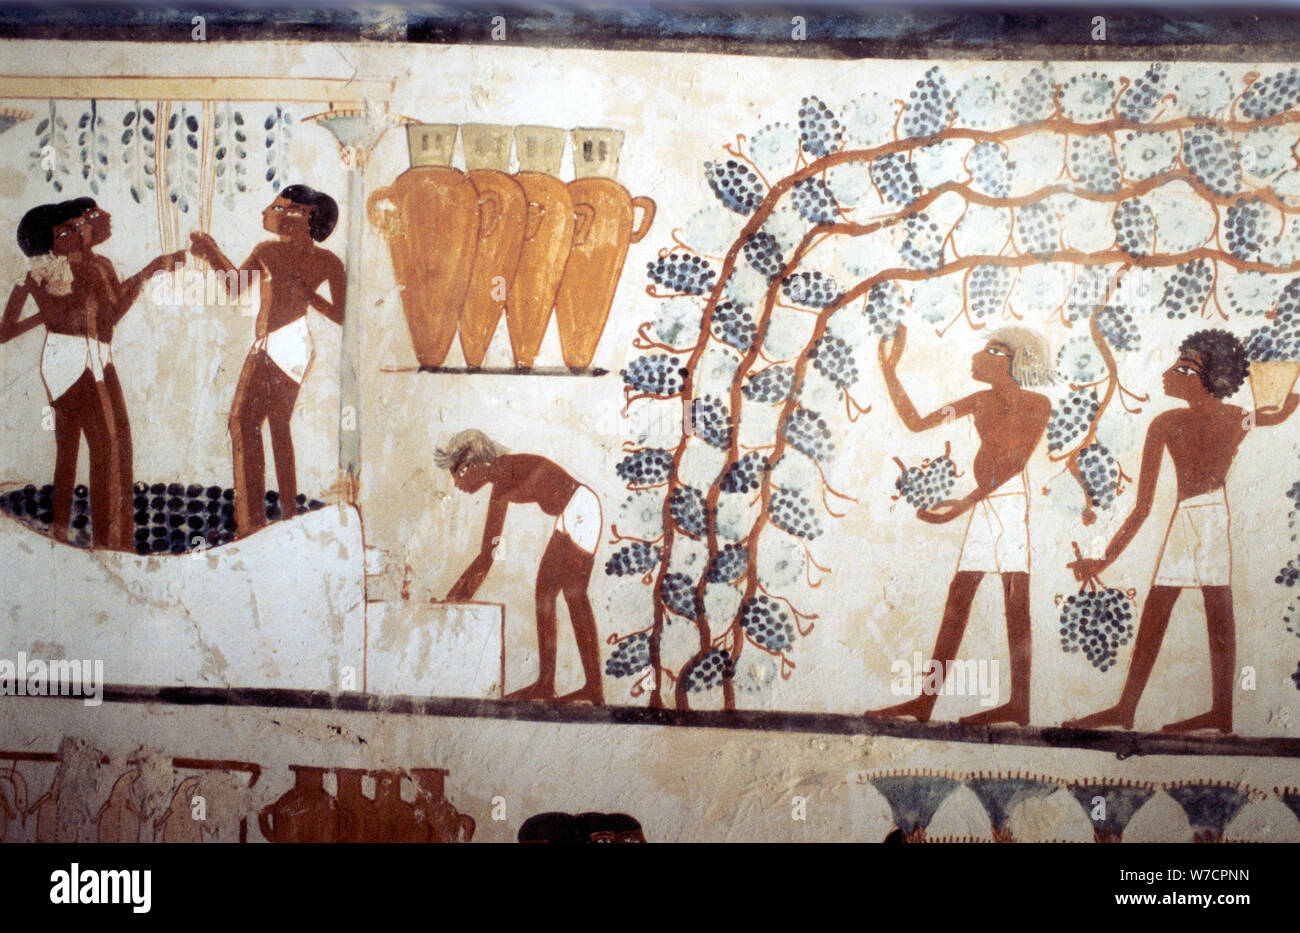 La peinture murale de la tombe du scribe Menna, Thèbes, Egypte antique, 18ème dynastie. Artiste : Inconnu Banque D'Images